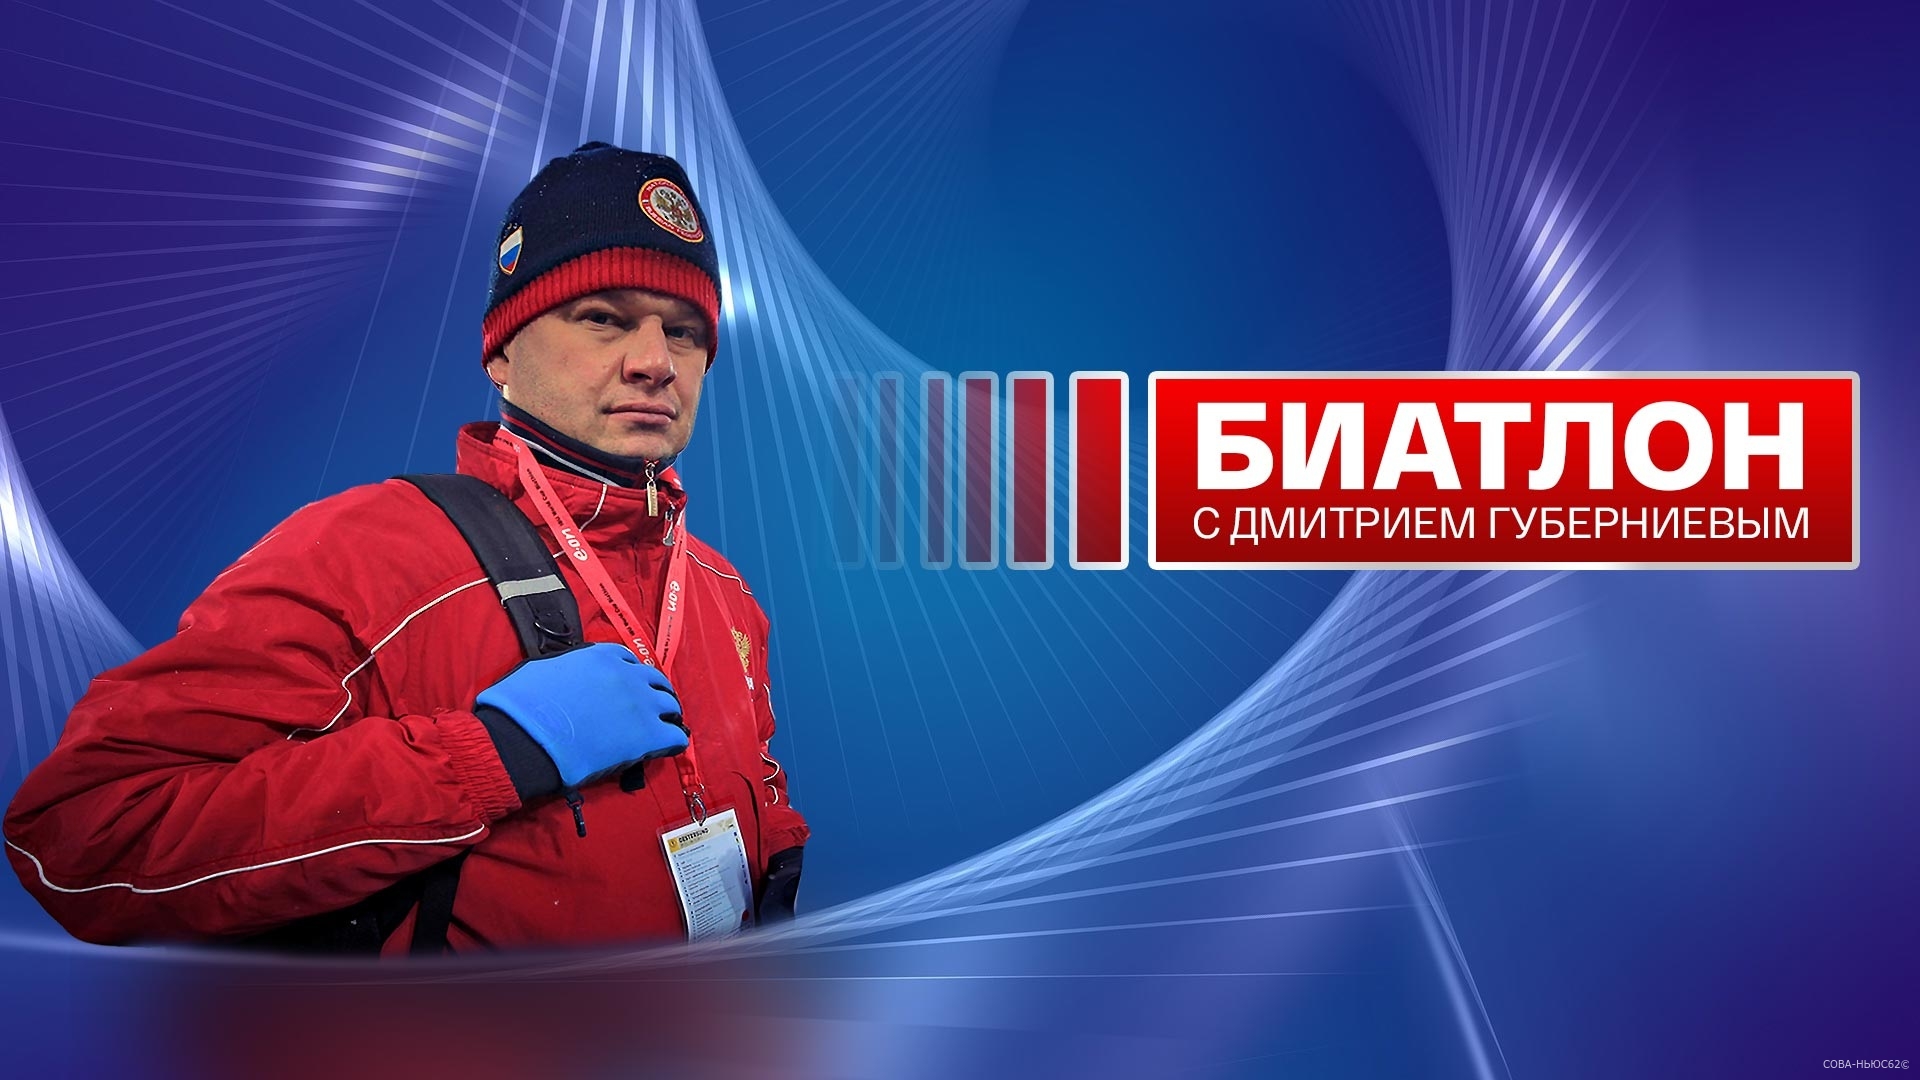 Дмитрий Губерниев вспомнил рязанские тротуары прямо в телеэфире с биатлона